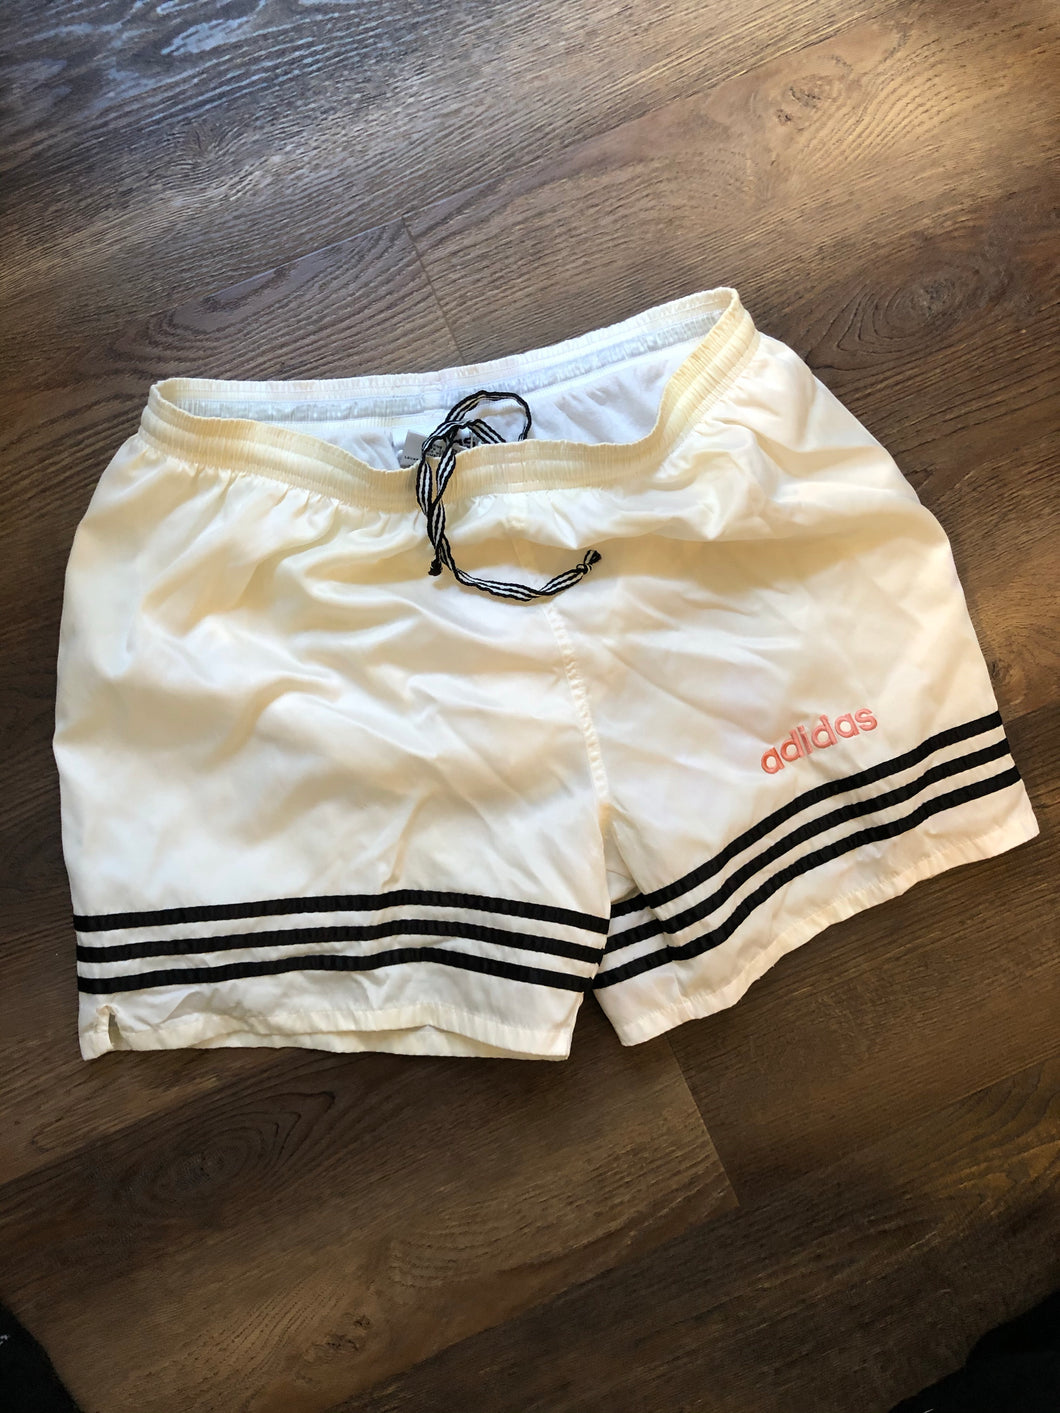 Adidas shorts